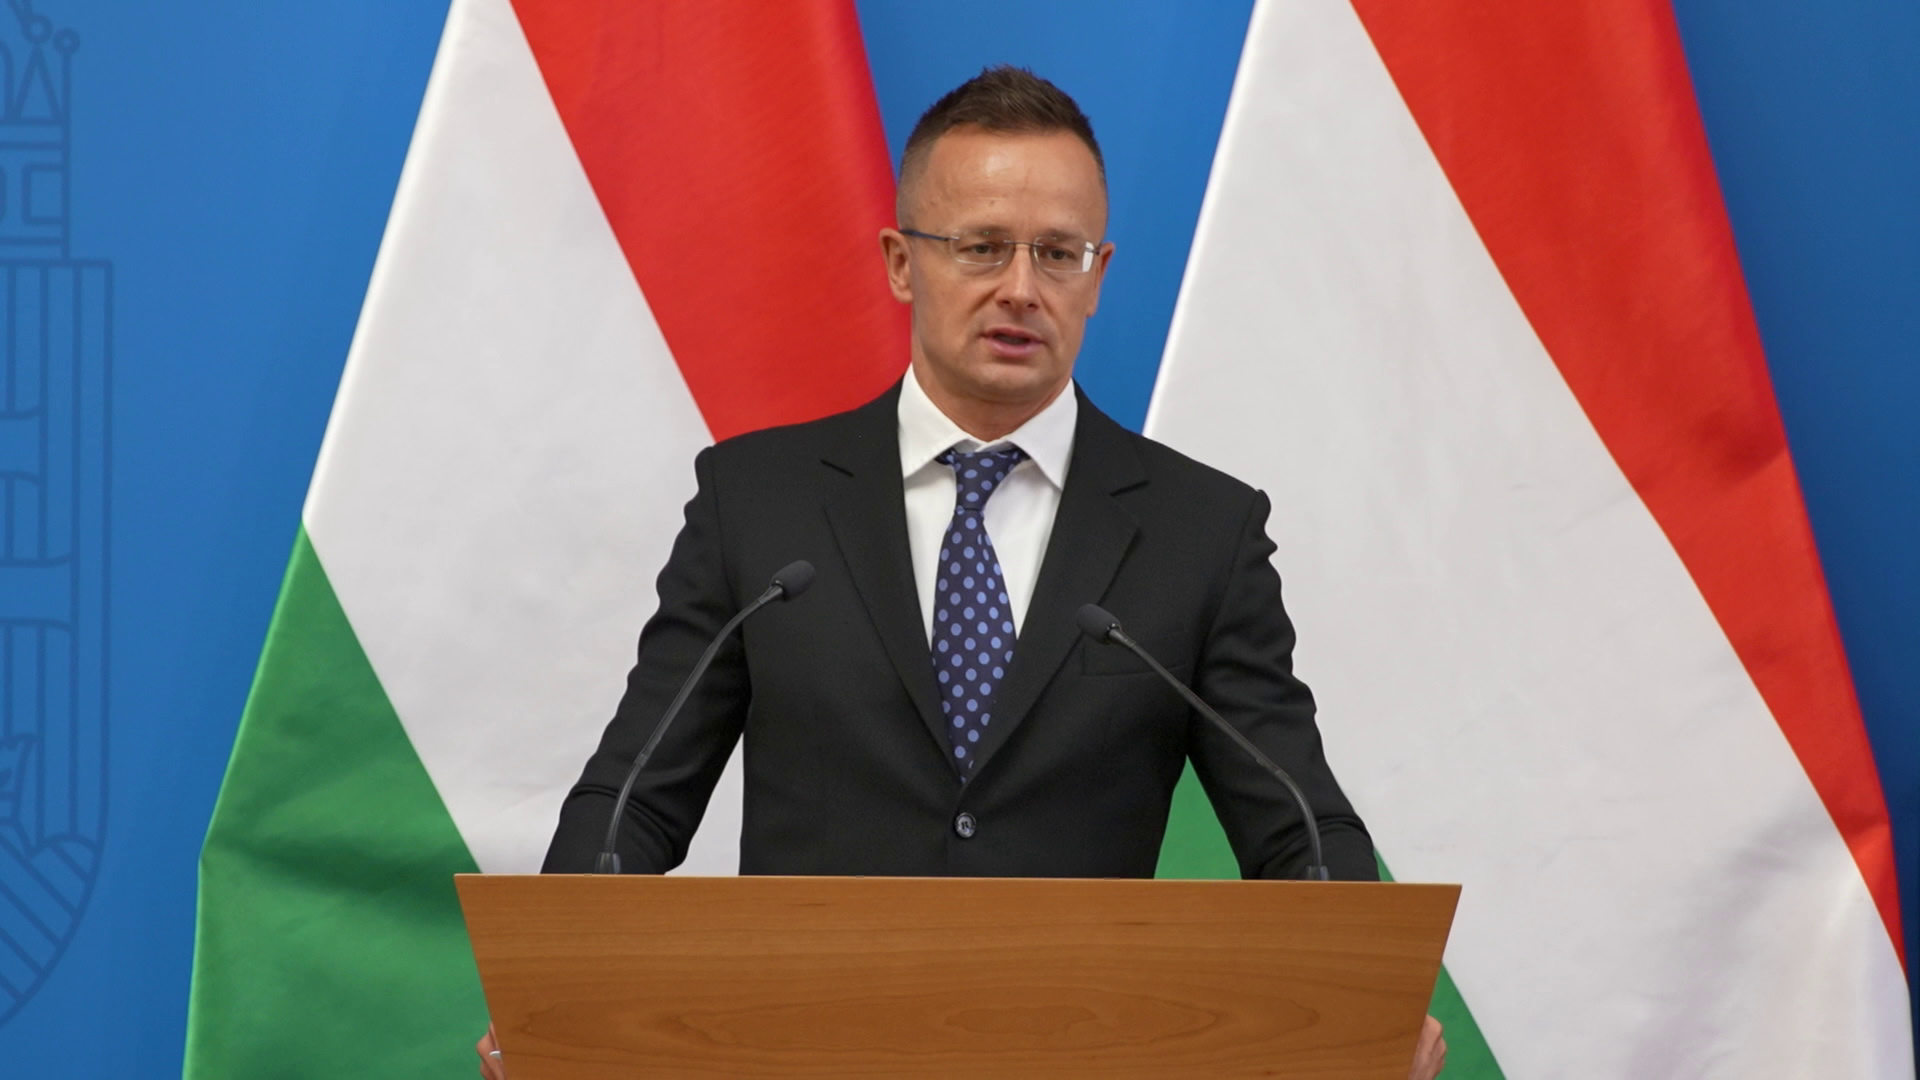  Szijjártó: Mindig vannak zavarkeltők, de fenntartjuk a magyar-román stratégiai partnerséget 